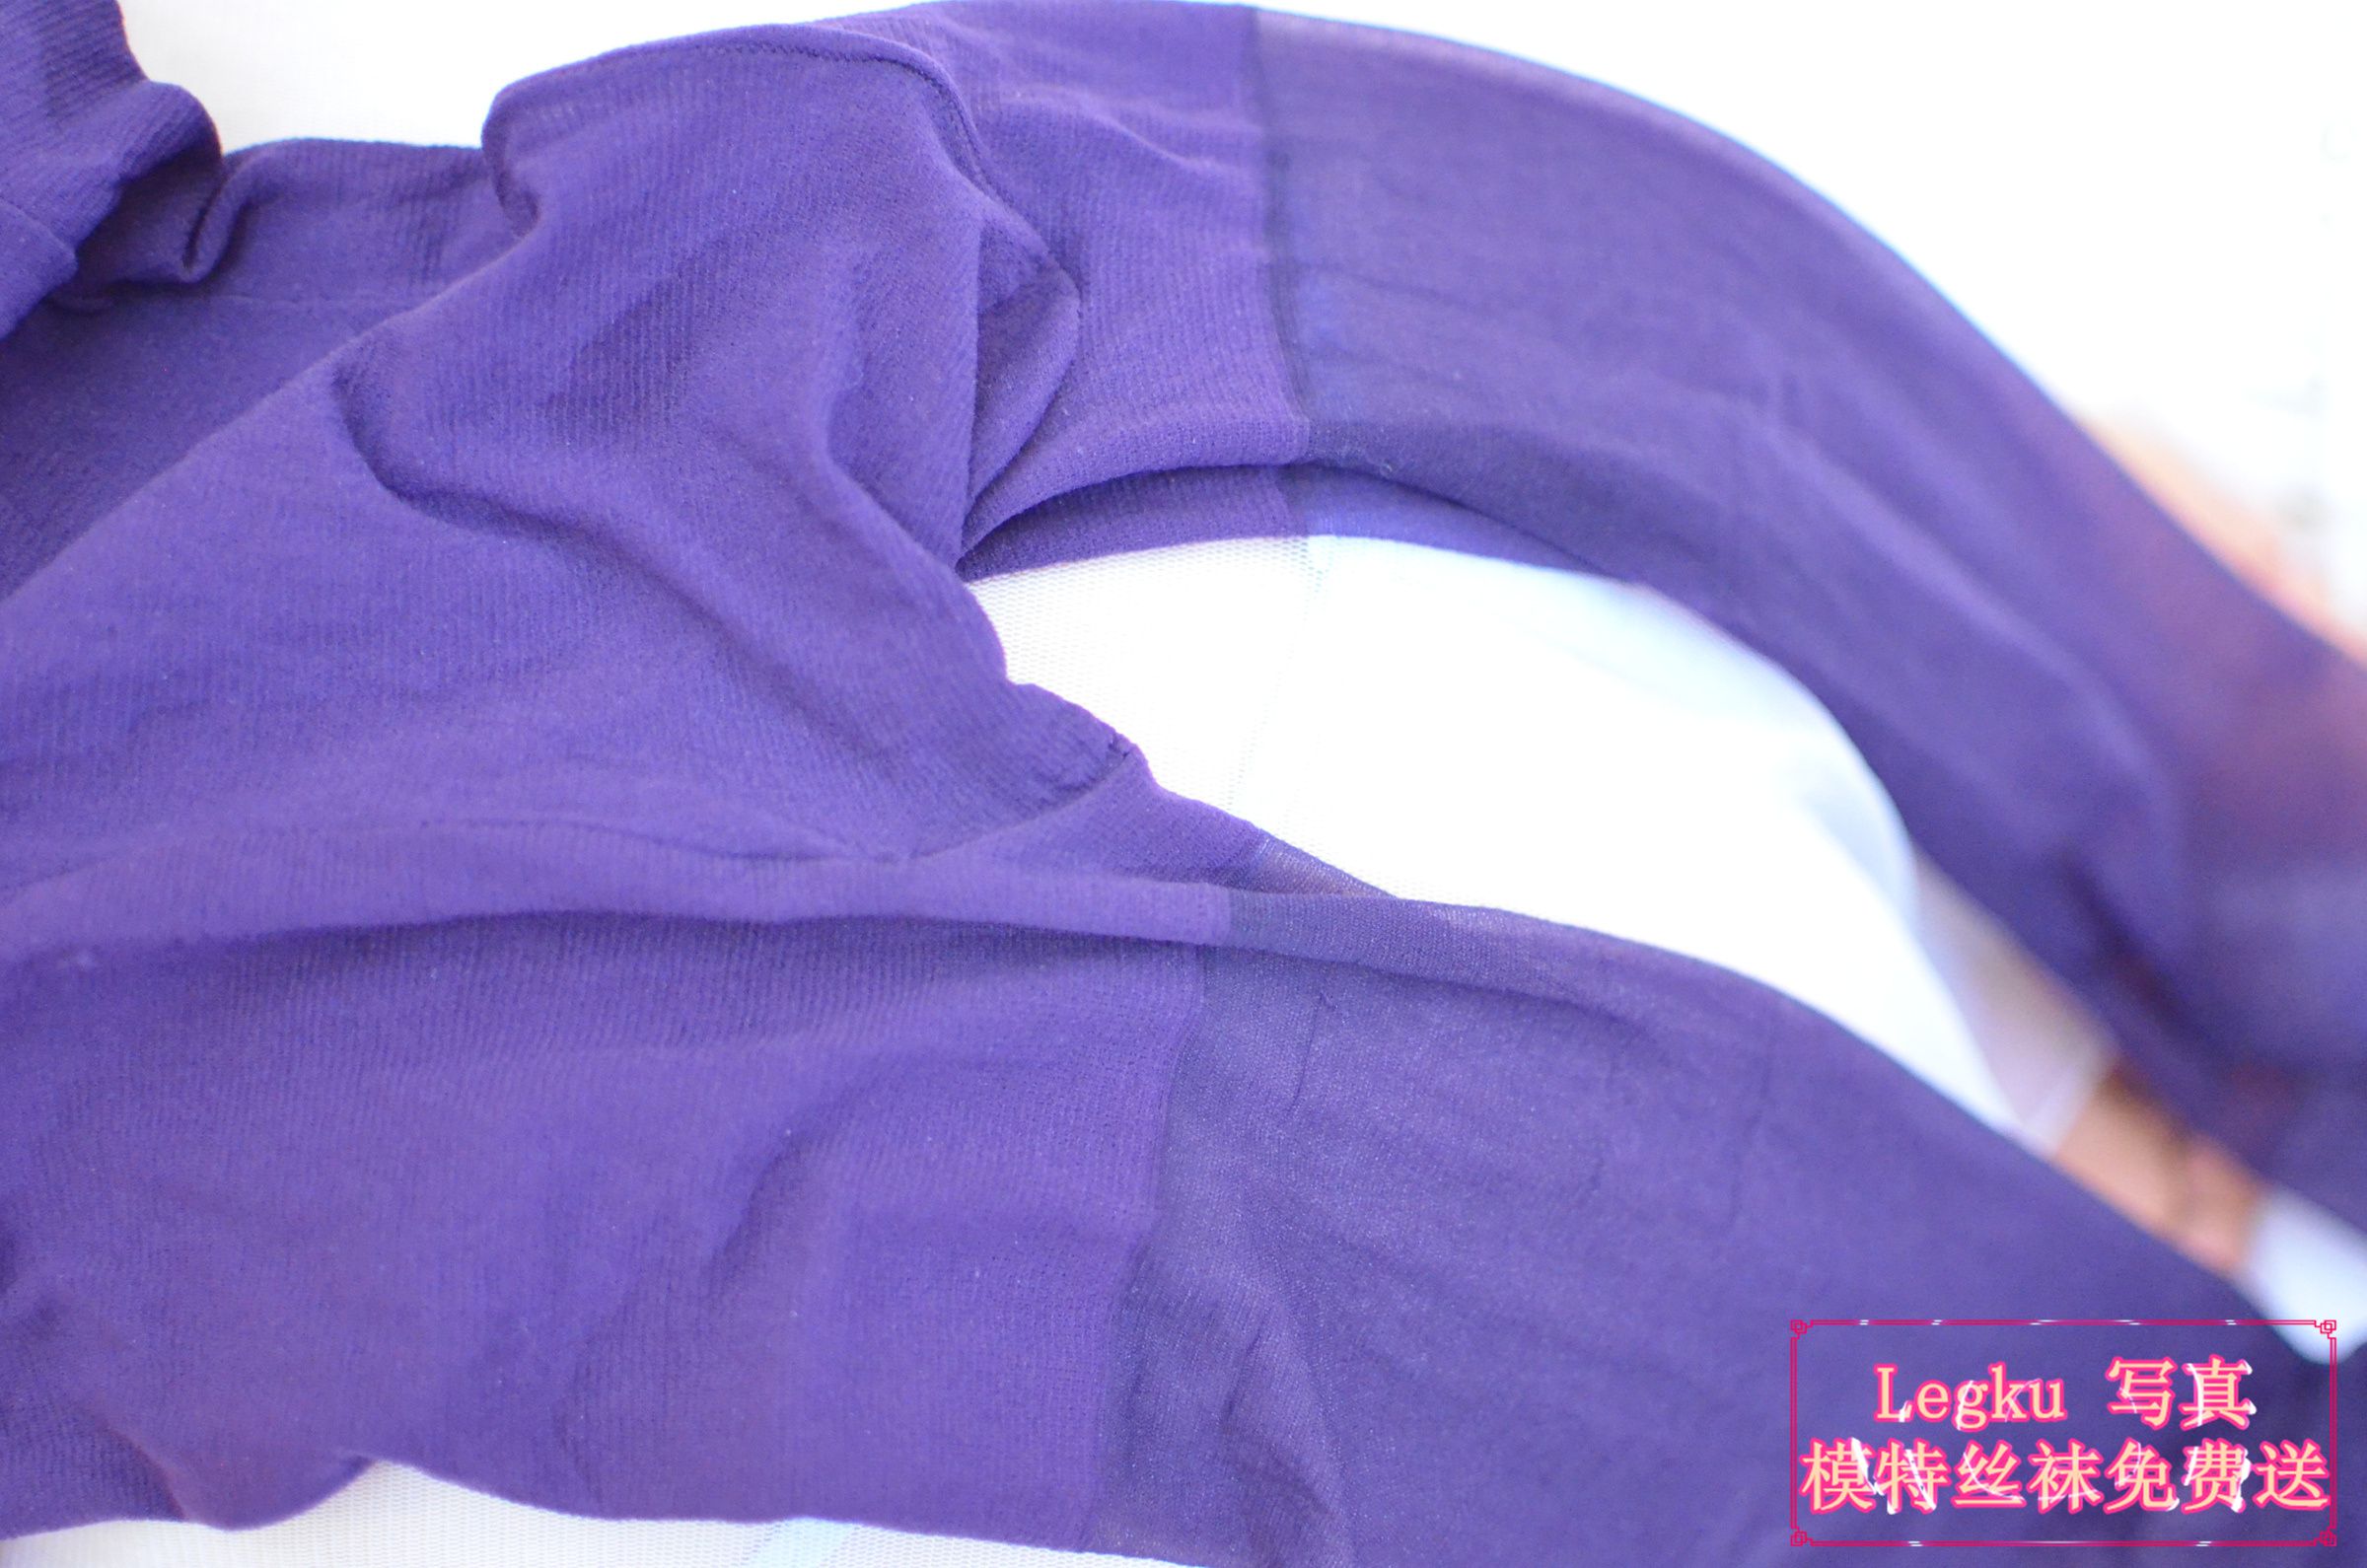 [Legku丝袜] No.184 紫色丝袜丝足 写真套图4 